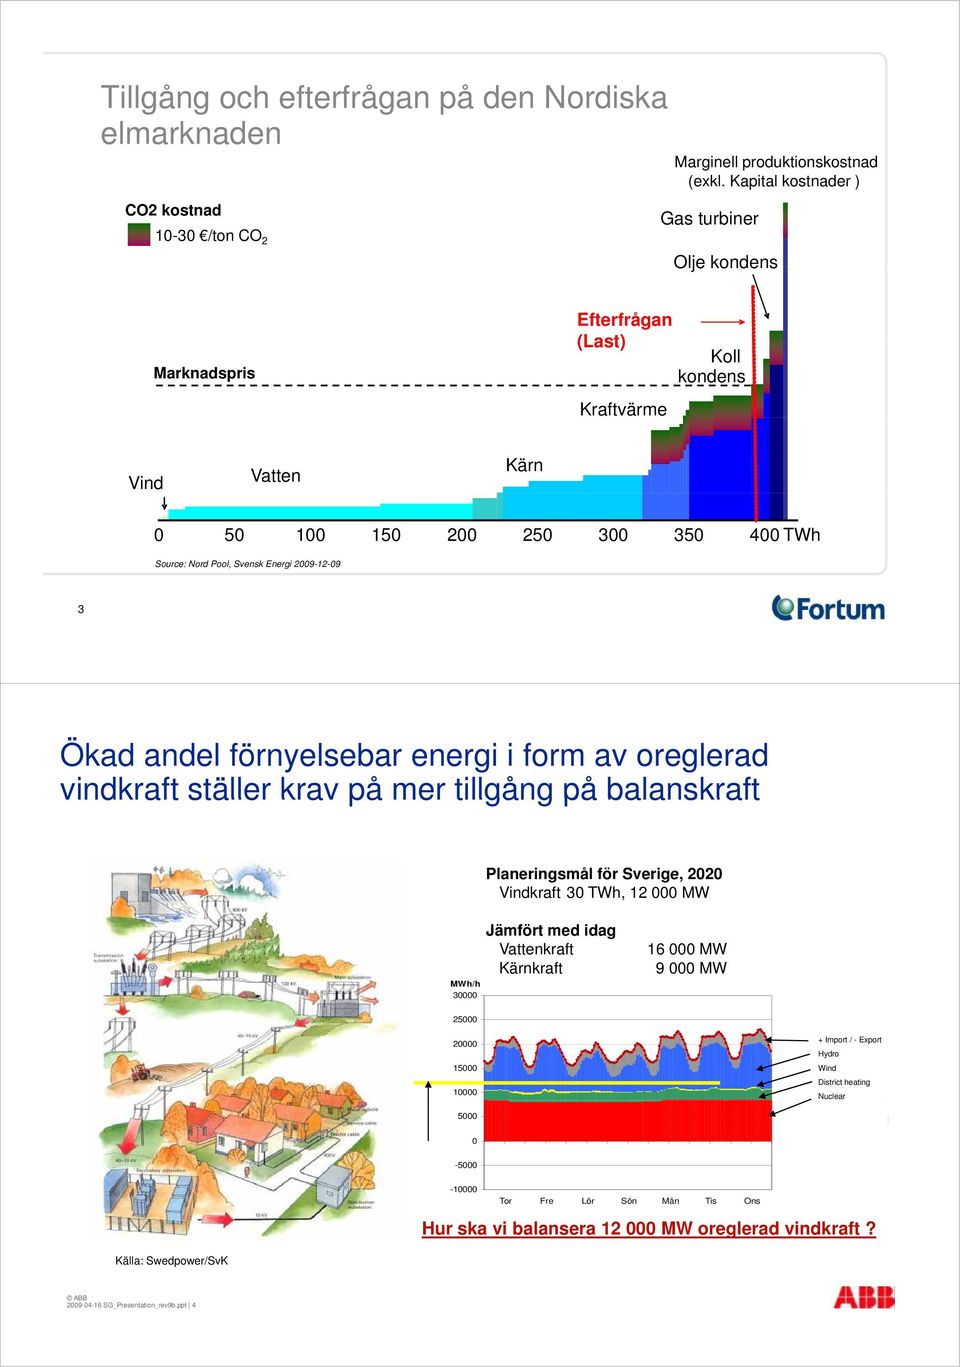 Pool, Svensk Energi 2009-12-09 3 Ökad andel förnyelsebar energi i form av oreglerad vindkraft ställer krav på mer tillgång på balanskraft Planeringsmål för Sverige, 2020 Vindkraft 30 TWh, 12 000 MW